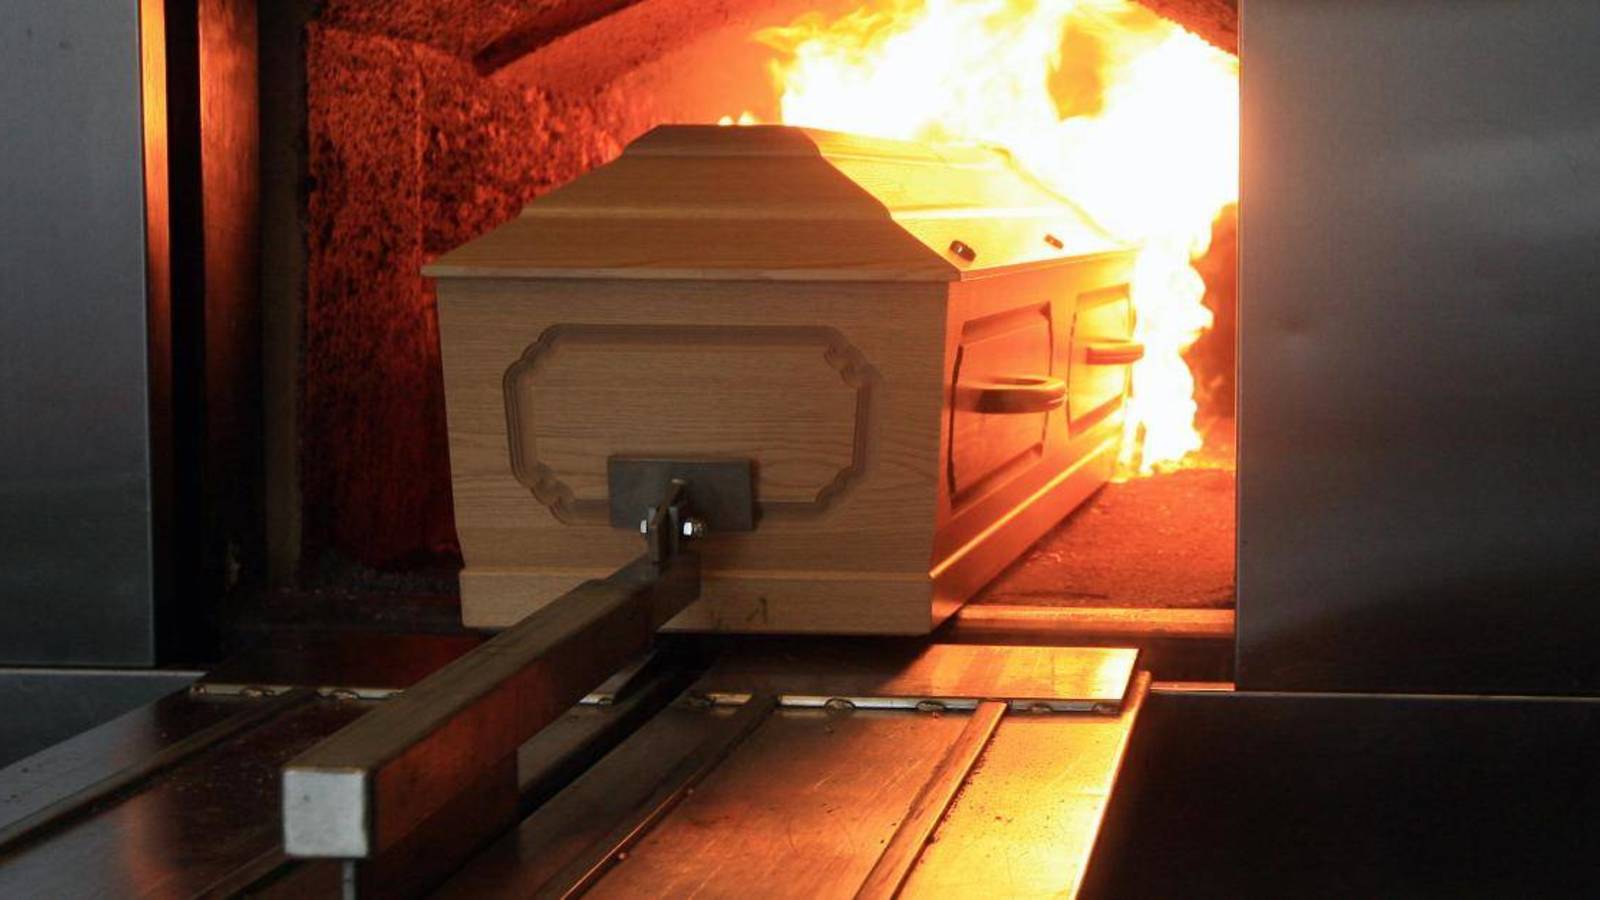 plan de estudios Literatura profesor Cremación para un fallecido por Covid-19 en Carabobo entre $400 y $500